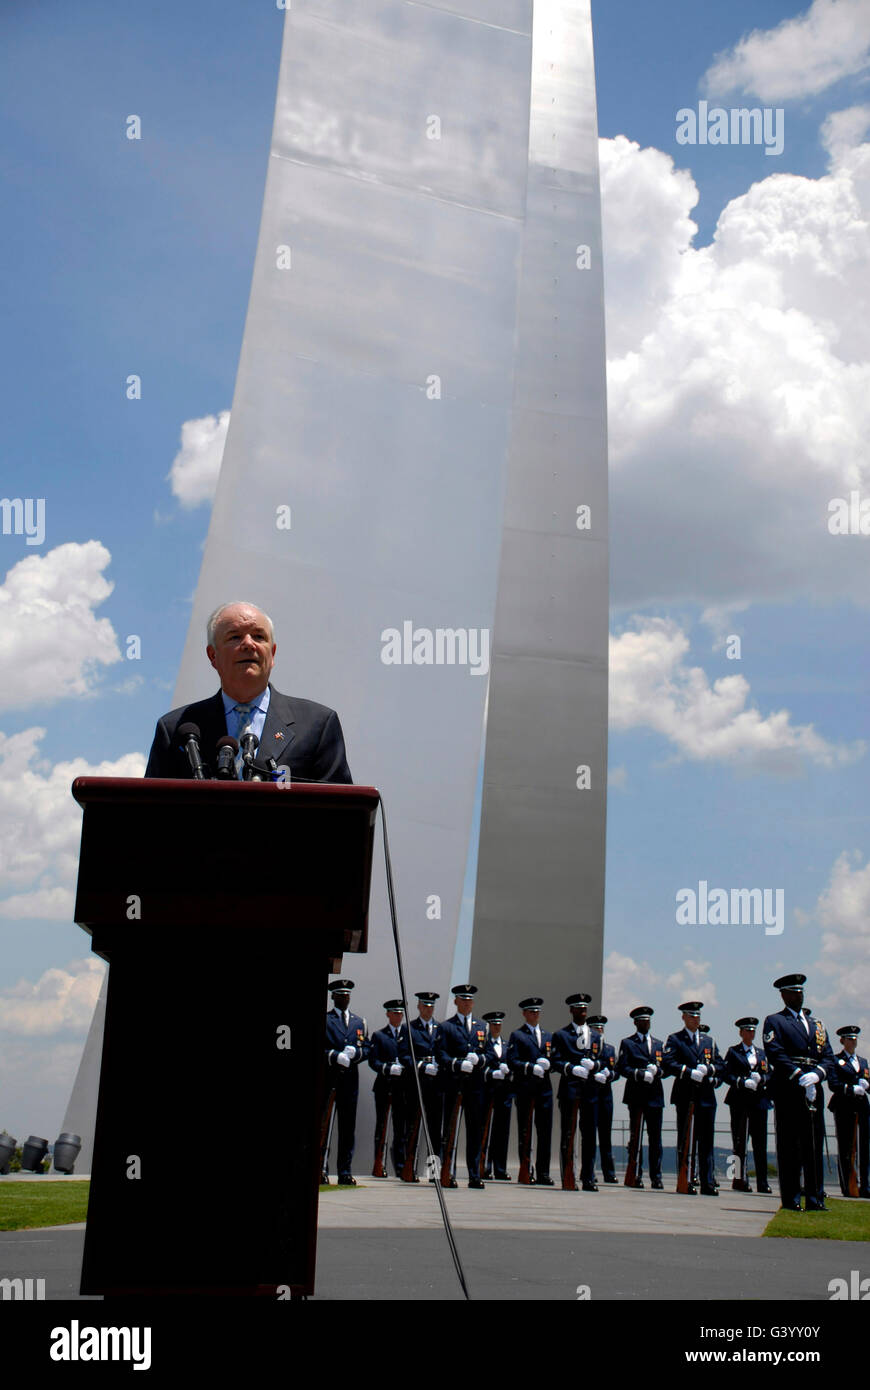 Segretario della Air Force saluta una folla di aviatori presso la Air Force Memorial. Foto Stock